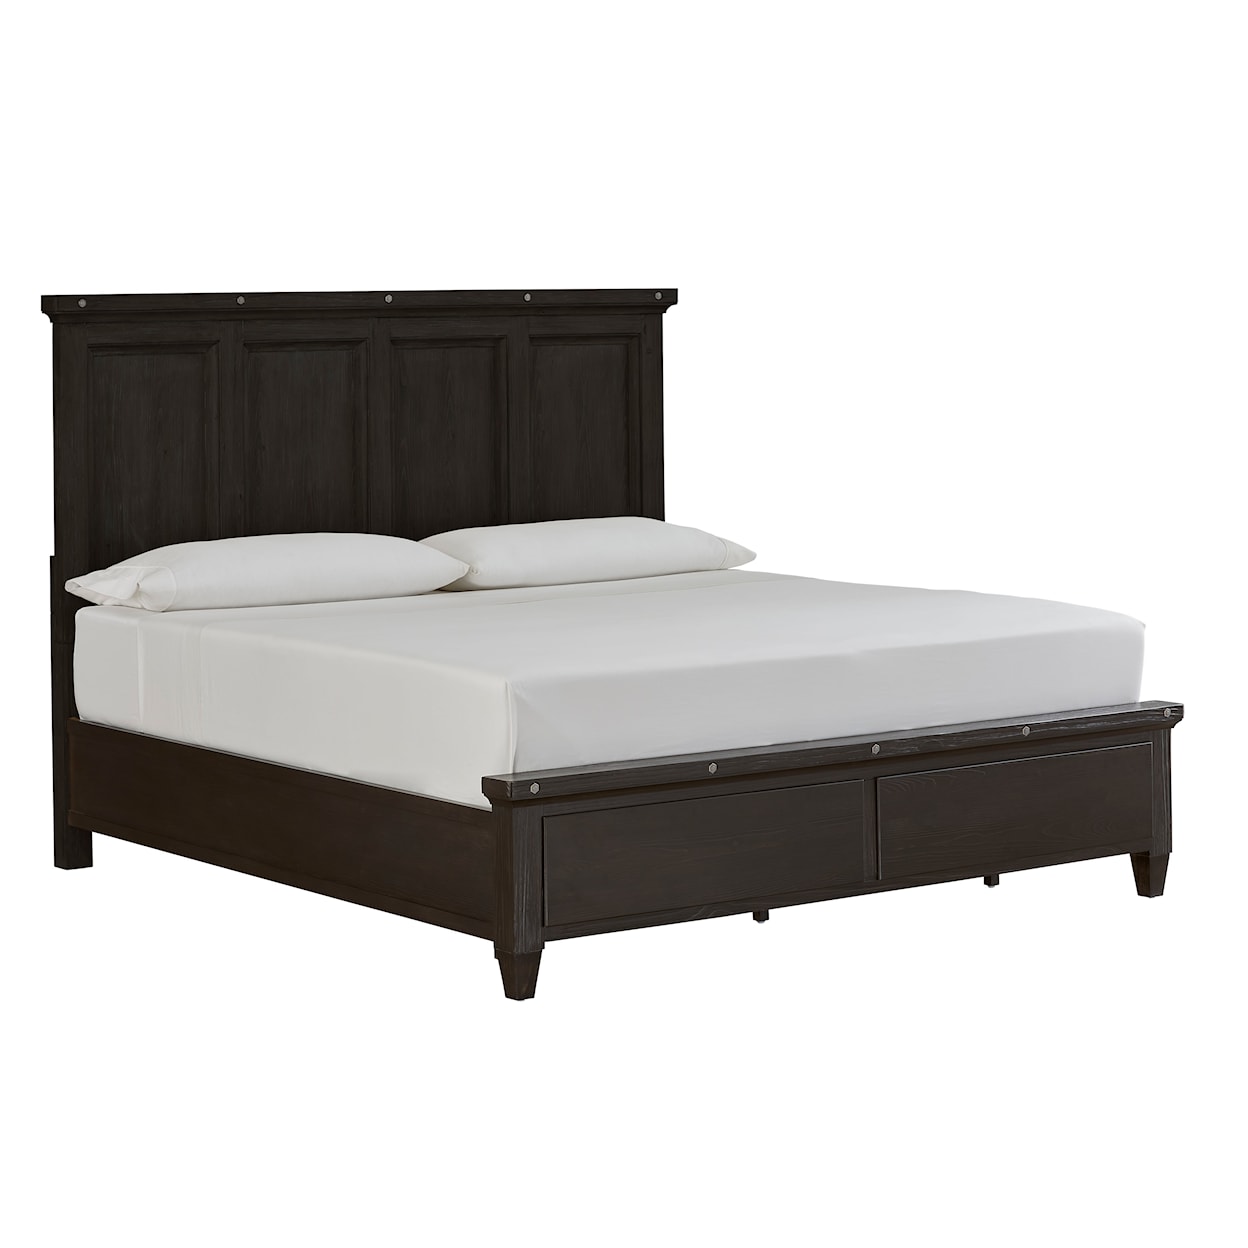 Magnussen Home Sierra Bedroom Queen Panel Bed